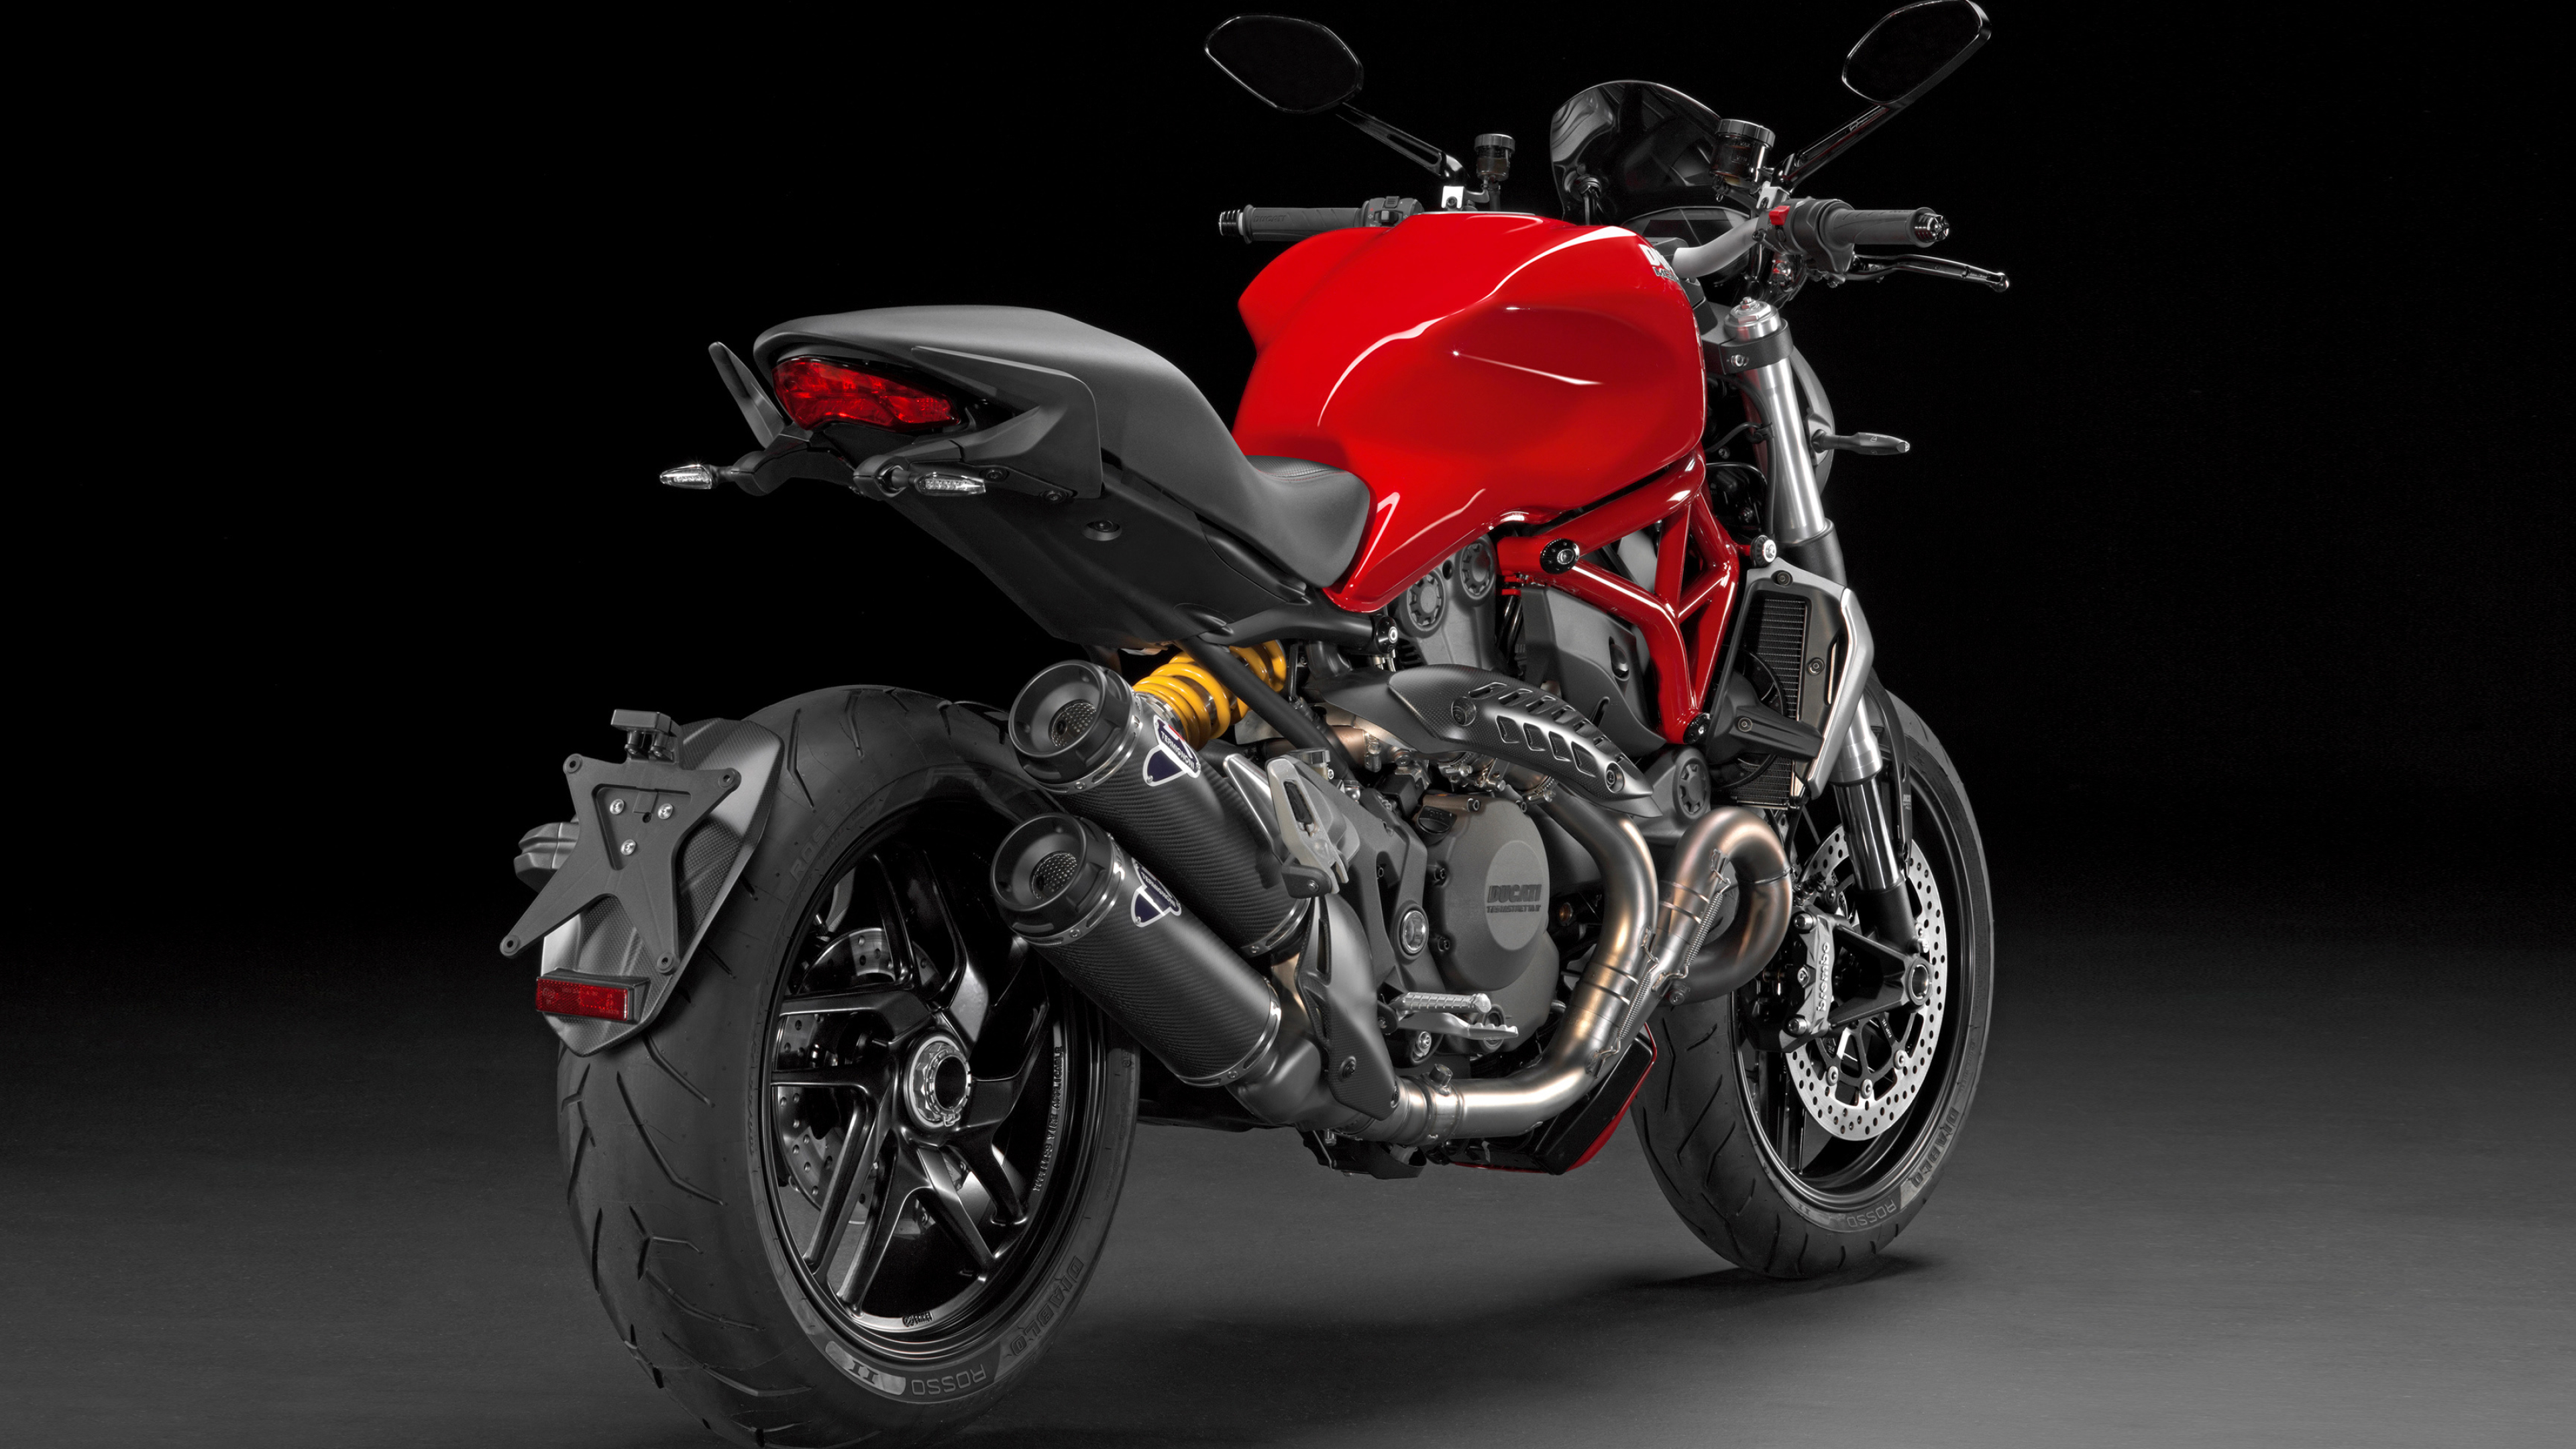 Ducati Monster 1200, Motorcycle desktop wallpapers, 4K Ultra HD, Auto, 3840x2160 4K Desktop